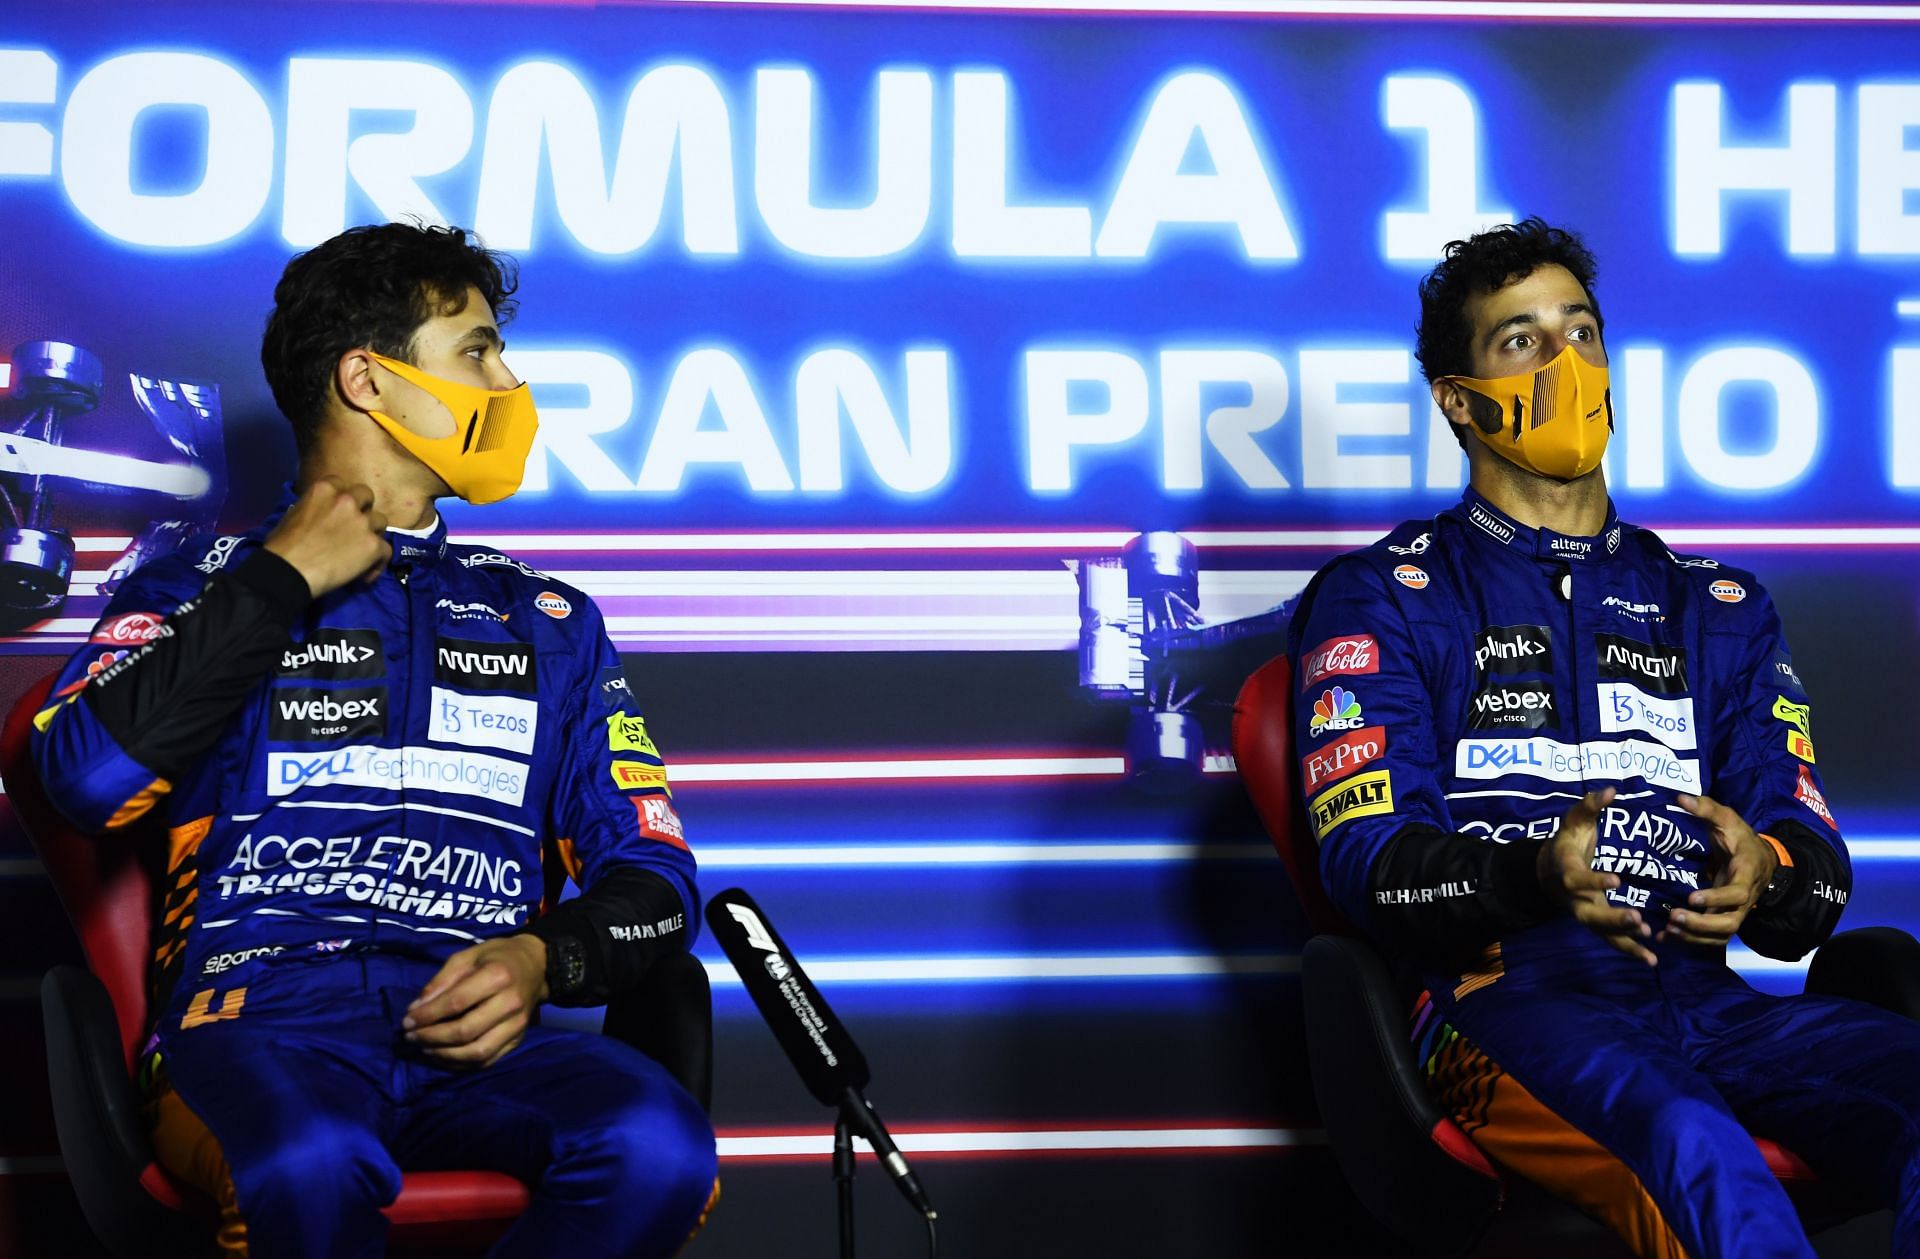 F1 Grand Prix of Italy - Lando Norris and Daniel Ricciardo at the pre-race press conference.